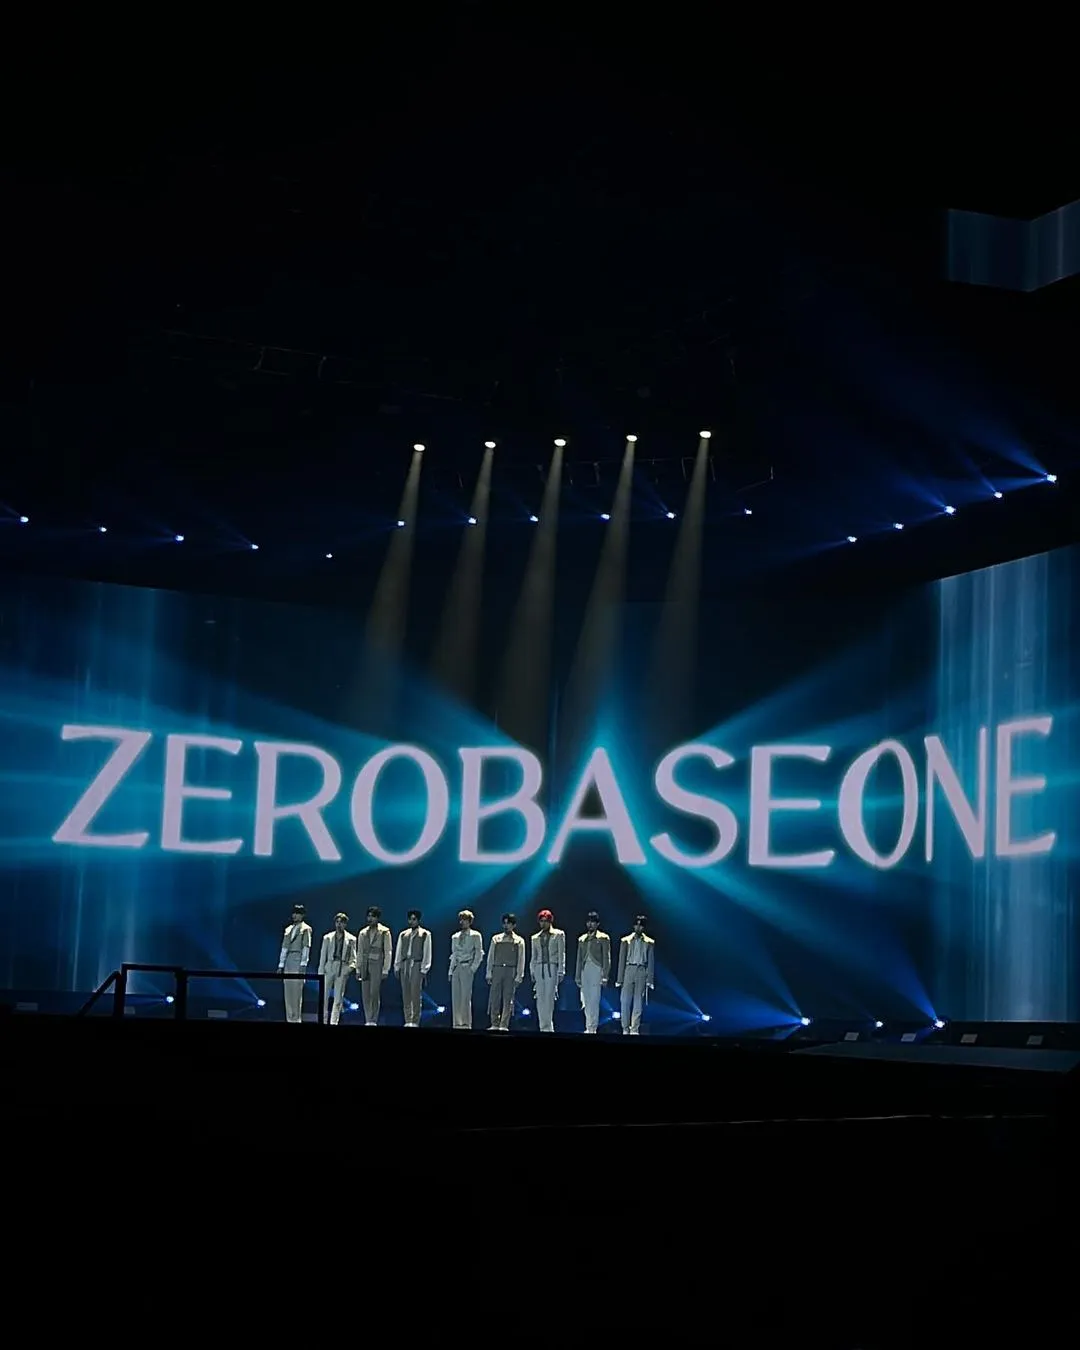 ZEROBASEONEs Cover dieses beliebten Songs der 3. Generation wird viral + Gruppe wird für ihre Leistung gelobt